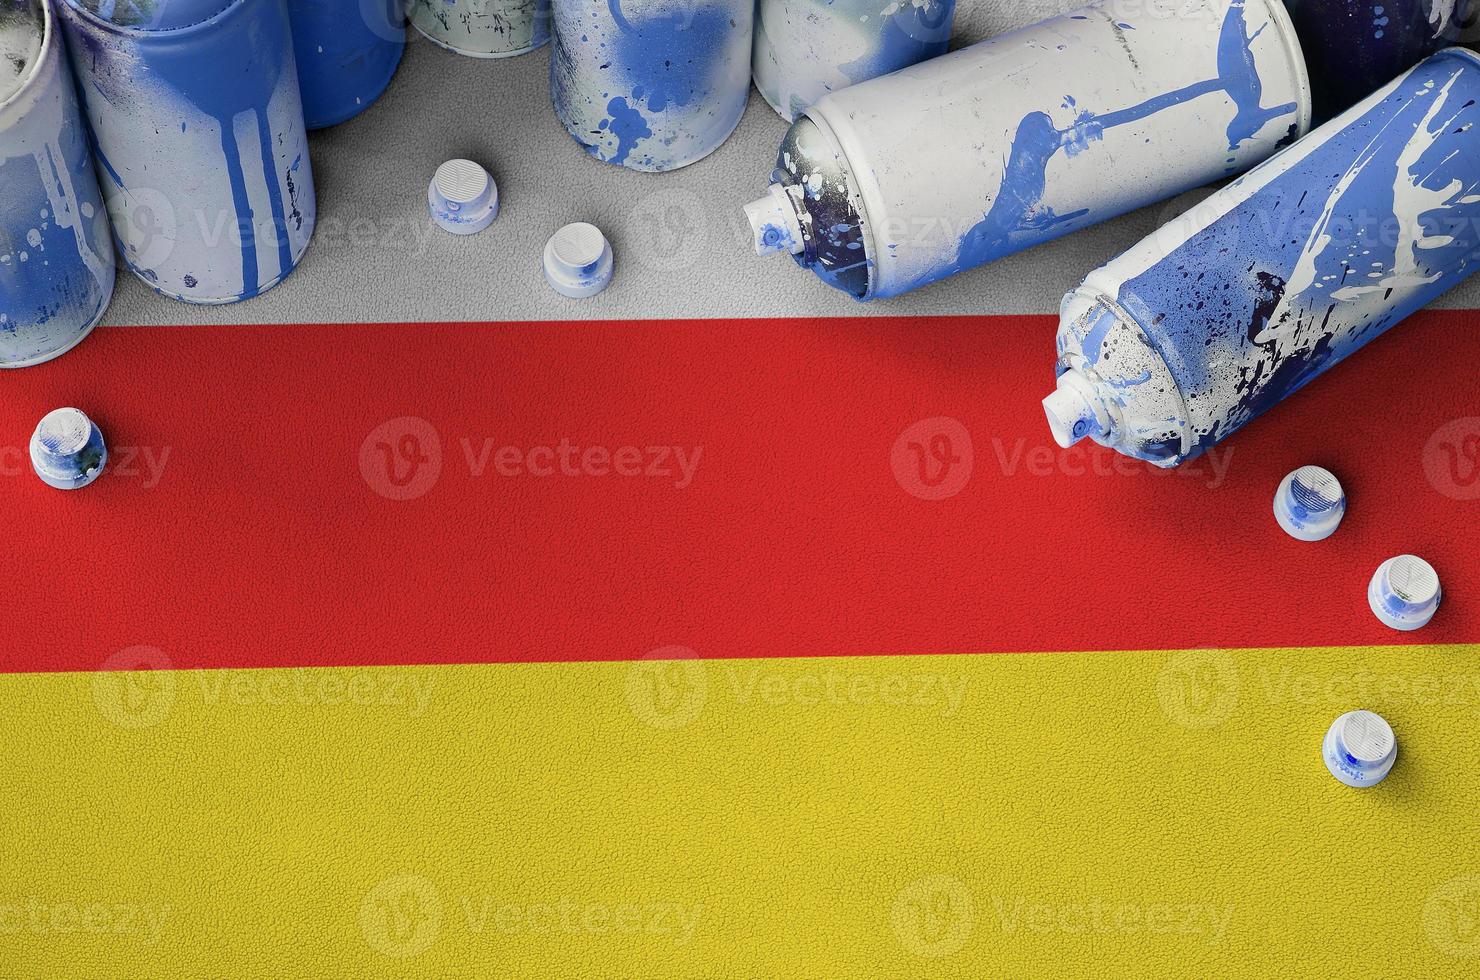 bandera de osetia del sur y pocas latas de aerosol usadas para pintar graffiti. concepto de cultura de arte callejero foto